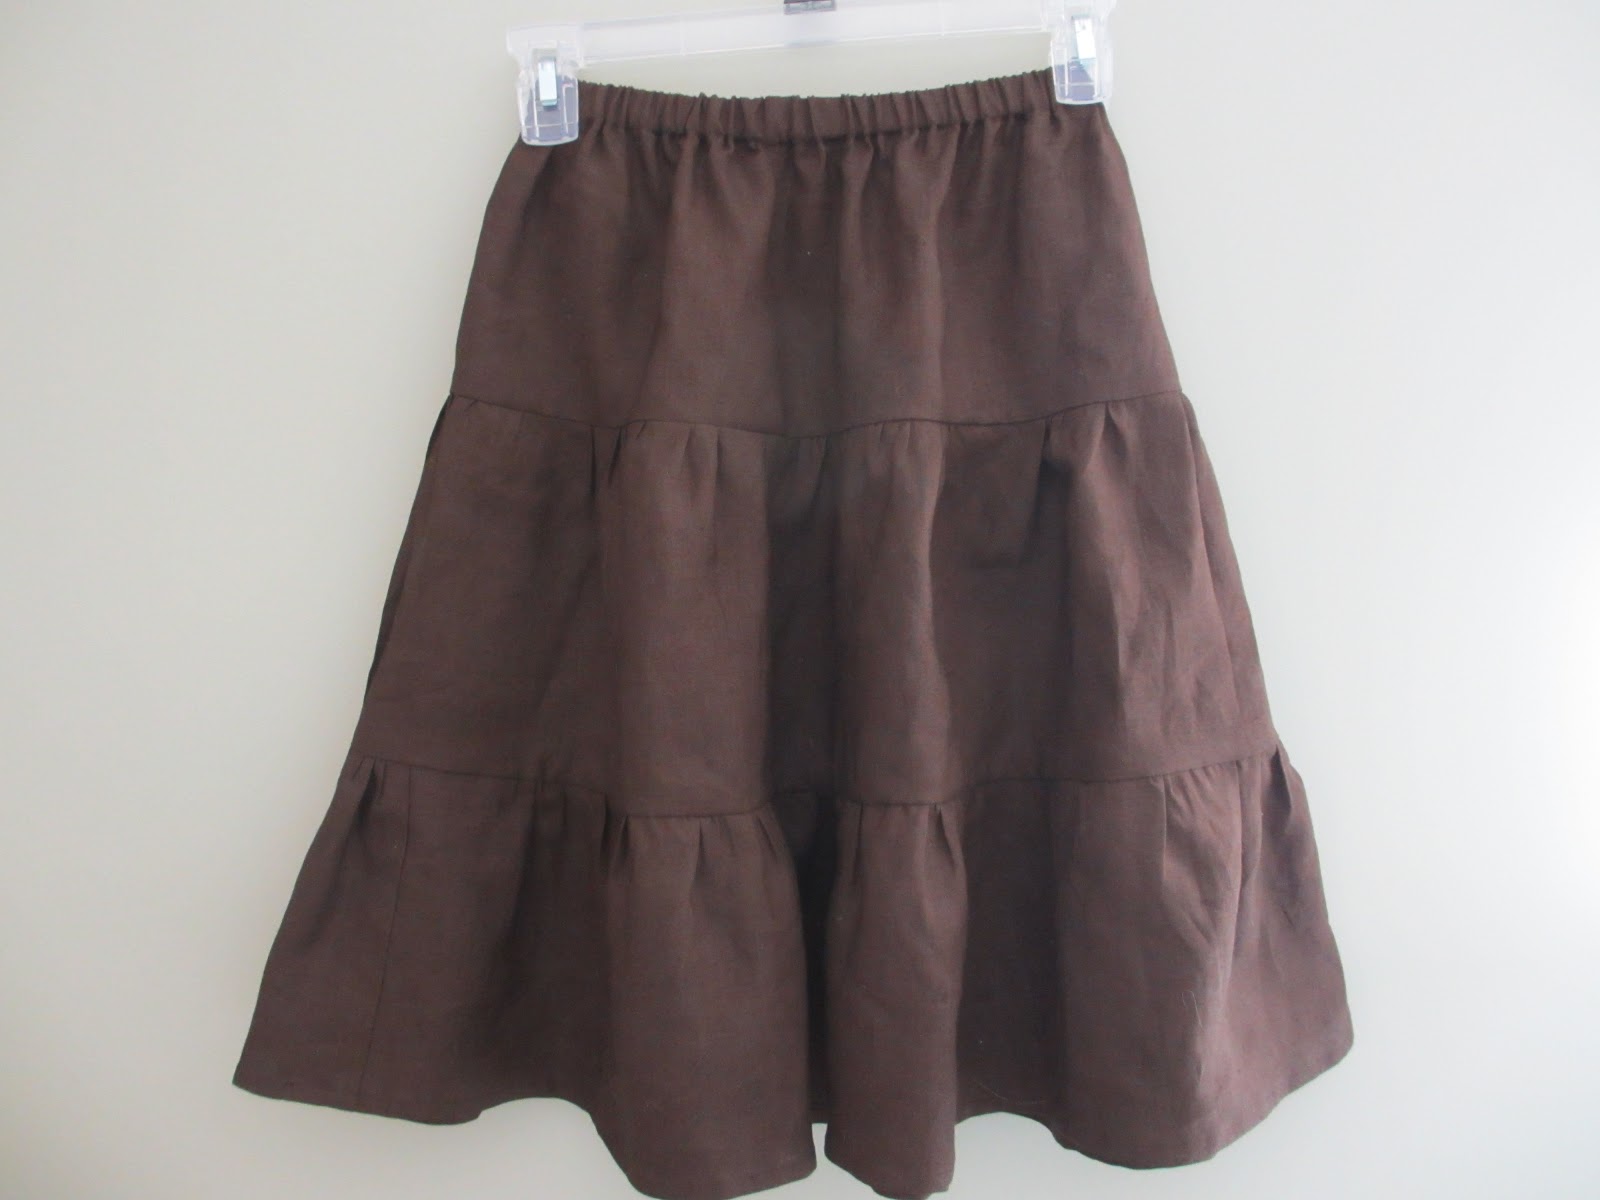 Sew Inspired Handmade Love: Girl's Tiered Skirt in Brown Linen